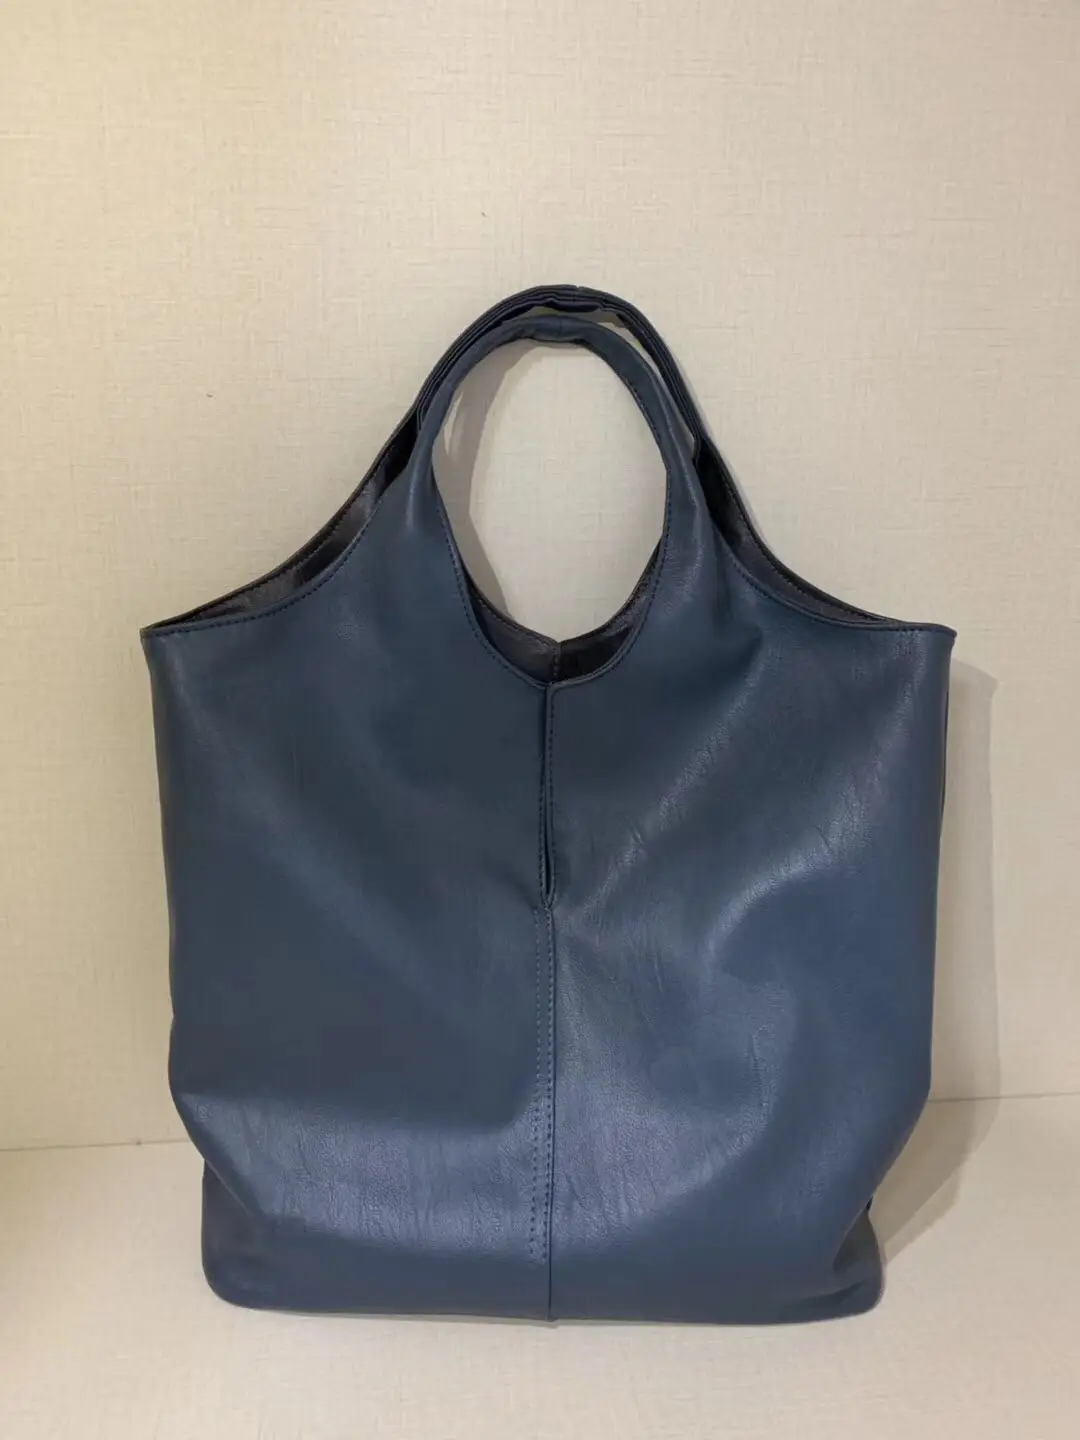 

Female 2Set Bag Fashion Women's Vintage Artificial Leather Tote Hobo Shoulder Bag Handbag Large A4 College School Work Business